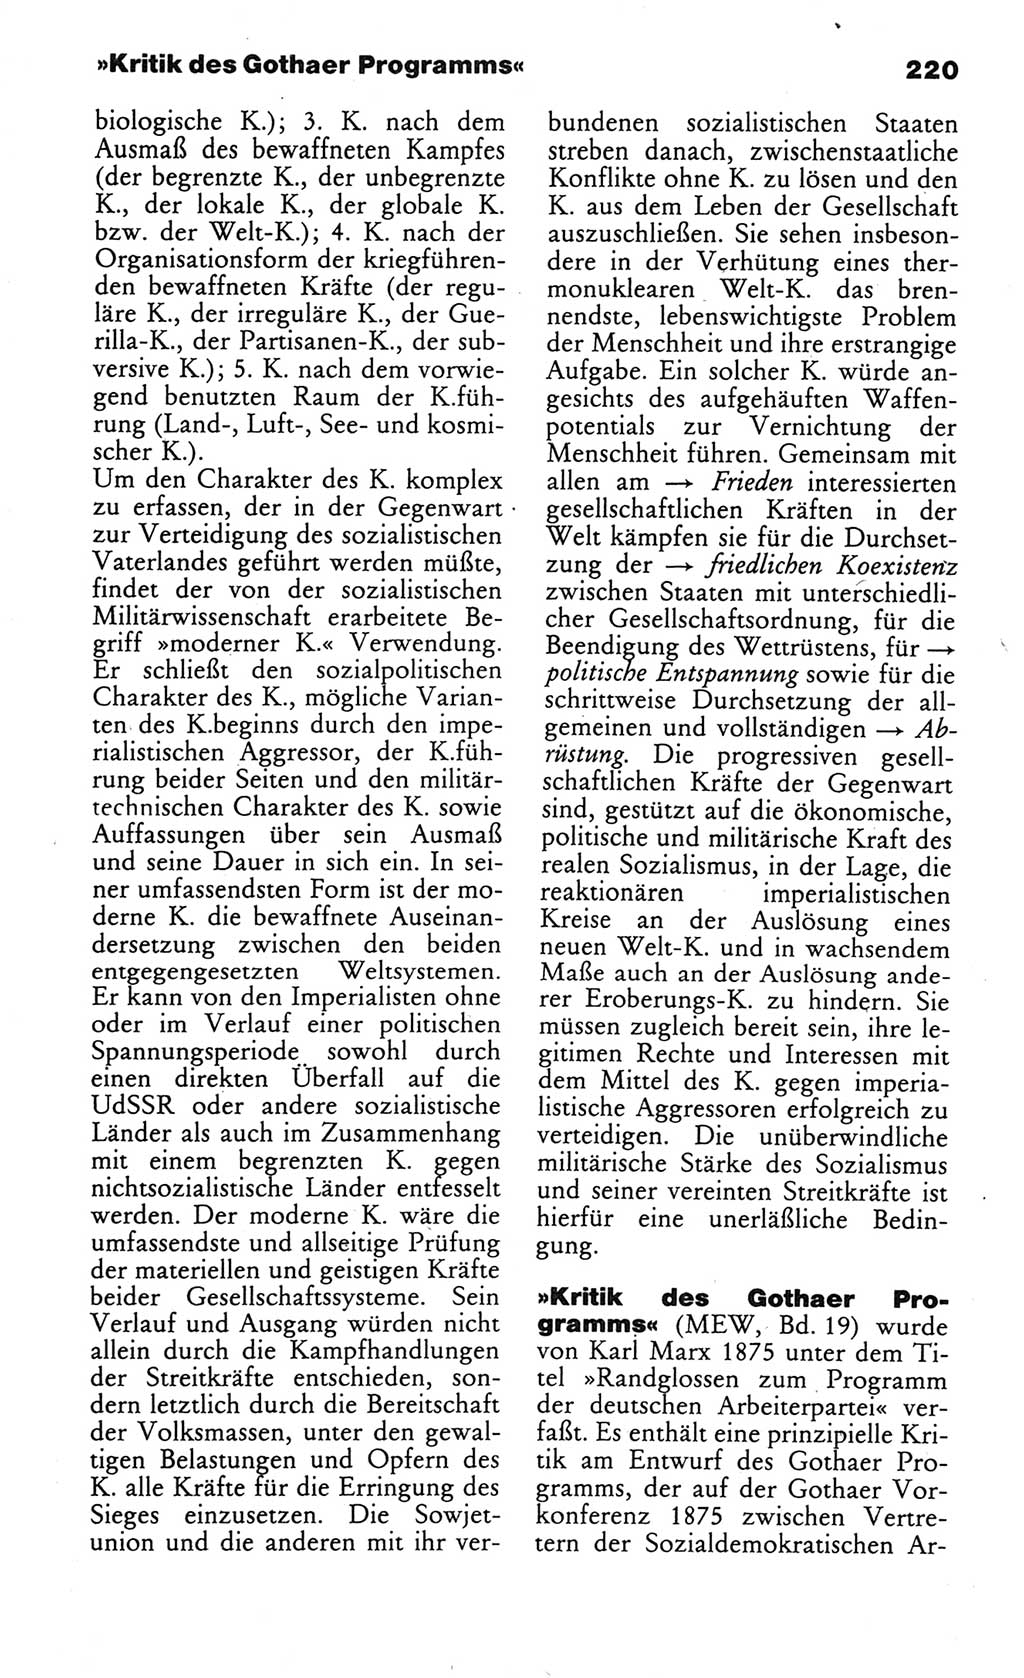 Wörterbuch des wissenschaftlichen Kommunismus [Deutsche Demokratische Republik (DDR)] 1984, Seite 220 (Wb. wiss. Komm. DDR 1984, S. 220)